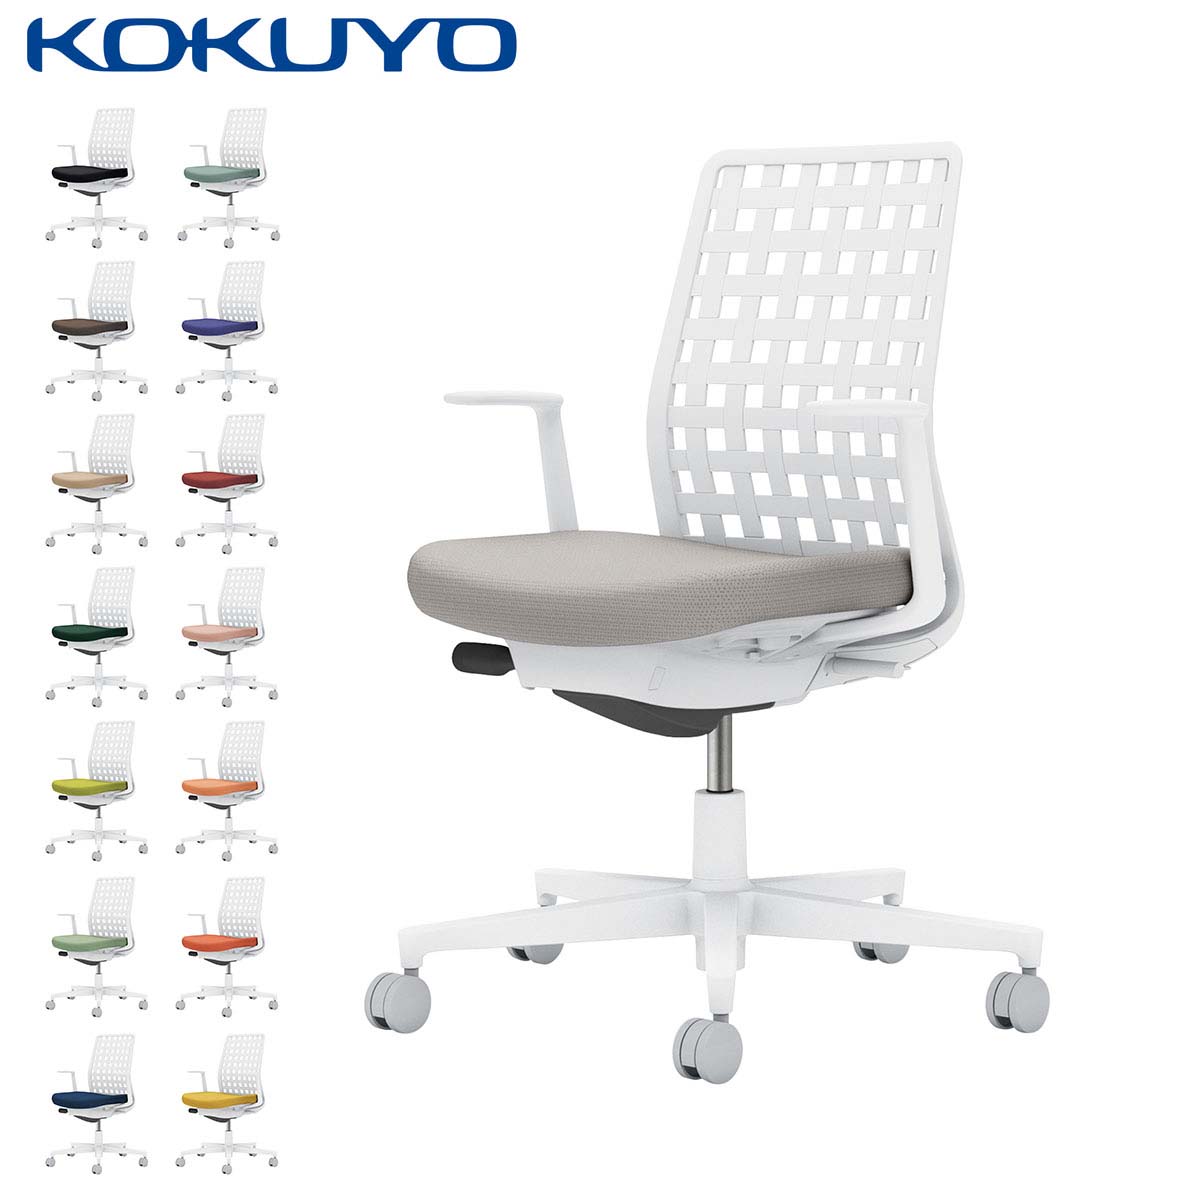 コクヨ デスクチェア オフィスチェア 椅子 Monet モネット C03-W310 背樹脂シェル L型肘 本体/脚ホワイト